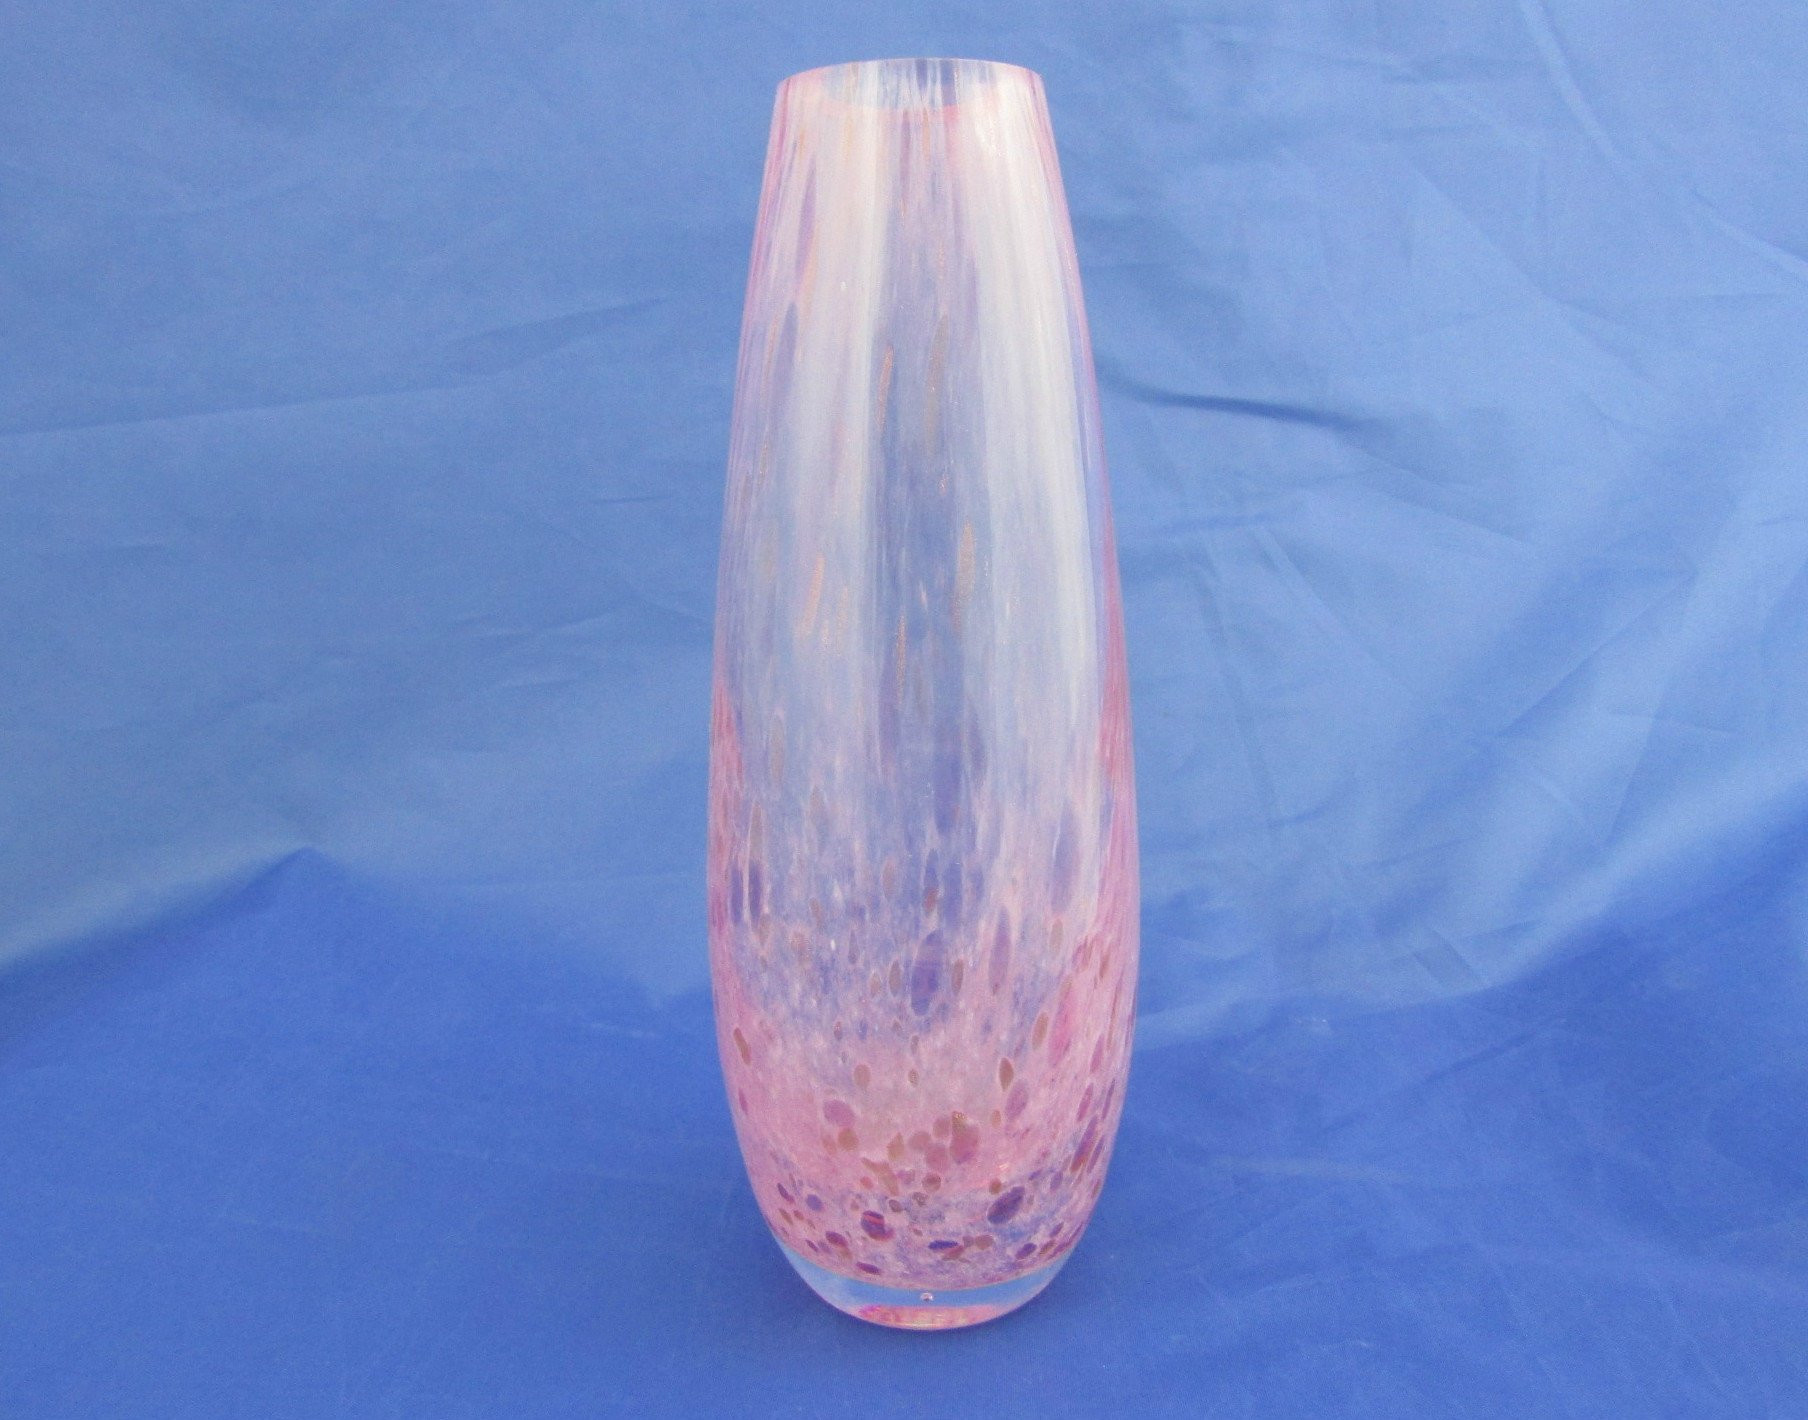 21 Awesome Vintage Glass Vases for Sale 2024 free download vintage glass vases for sale of caithness glass vase teardrop shaped vase pink spatter glass etsy for dc29fc294c28ezoom